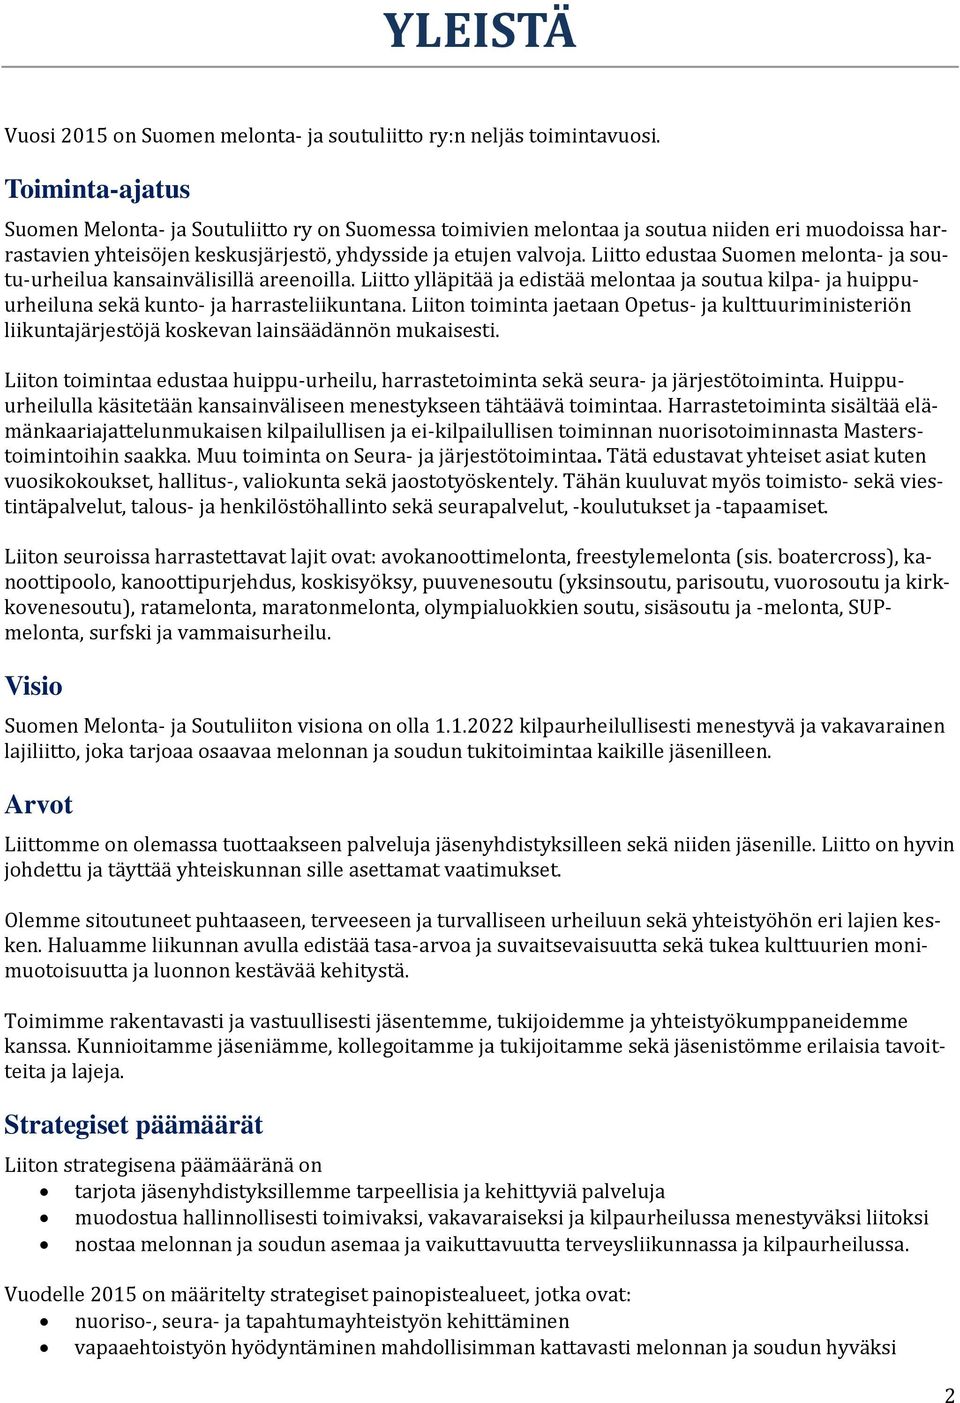 Liitto edustaa Suomen melonta- ja soutu-urheilua kansainvälisillä areenoilla. Liitto ylläpitää ja edistää melontaa ja soutua kilpa- ja huippuurheiluna sekä kunto- ja harrasteliikuntana.